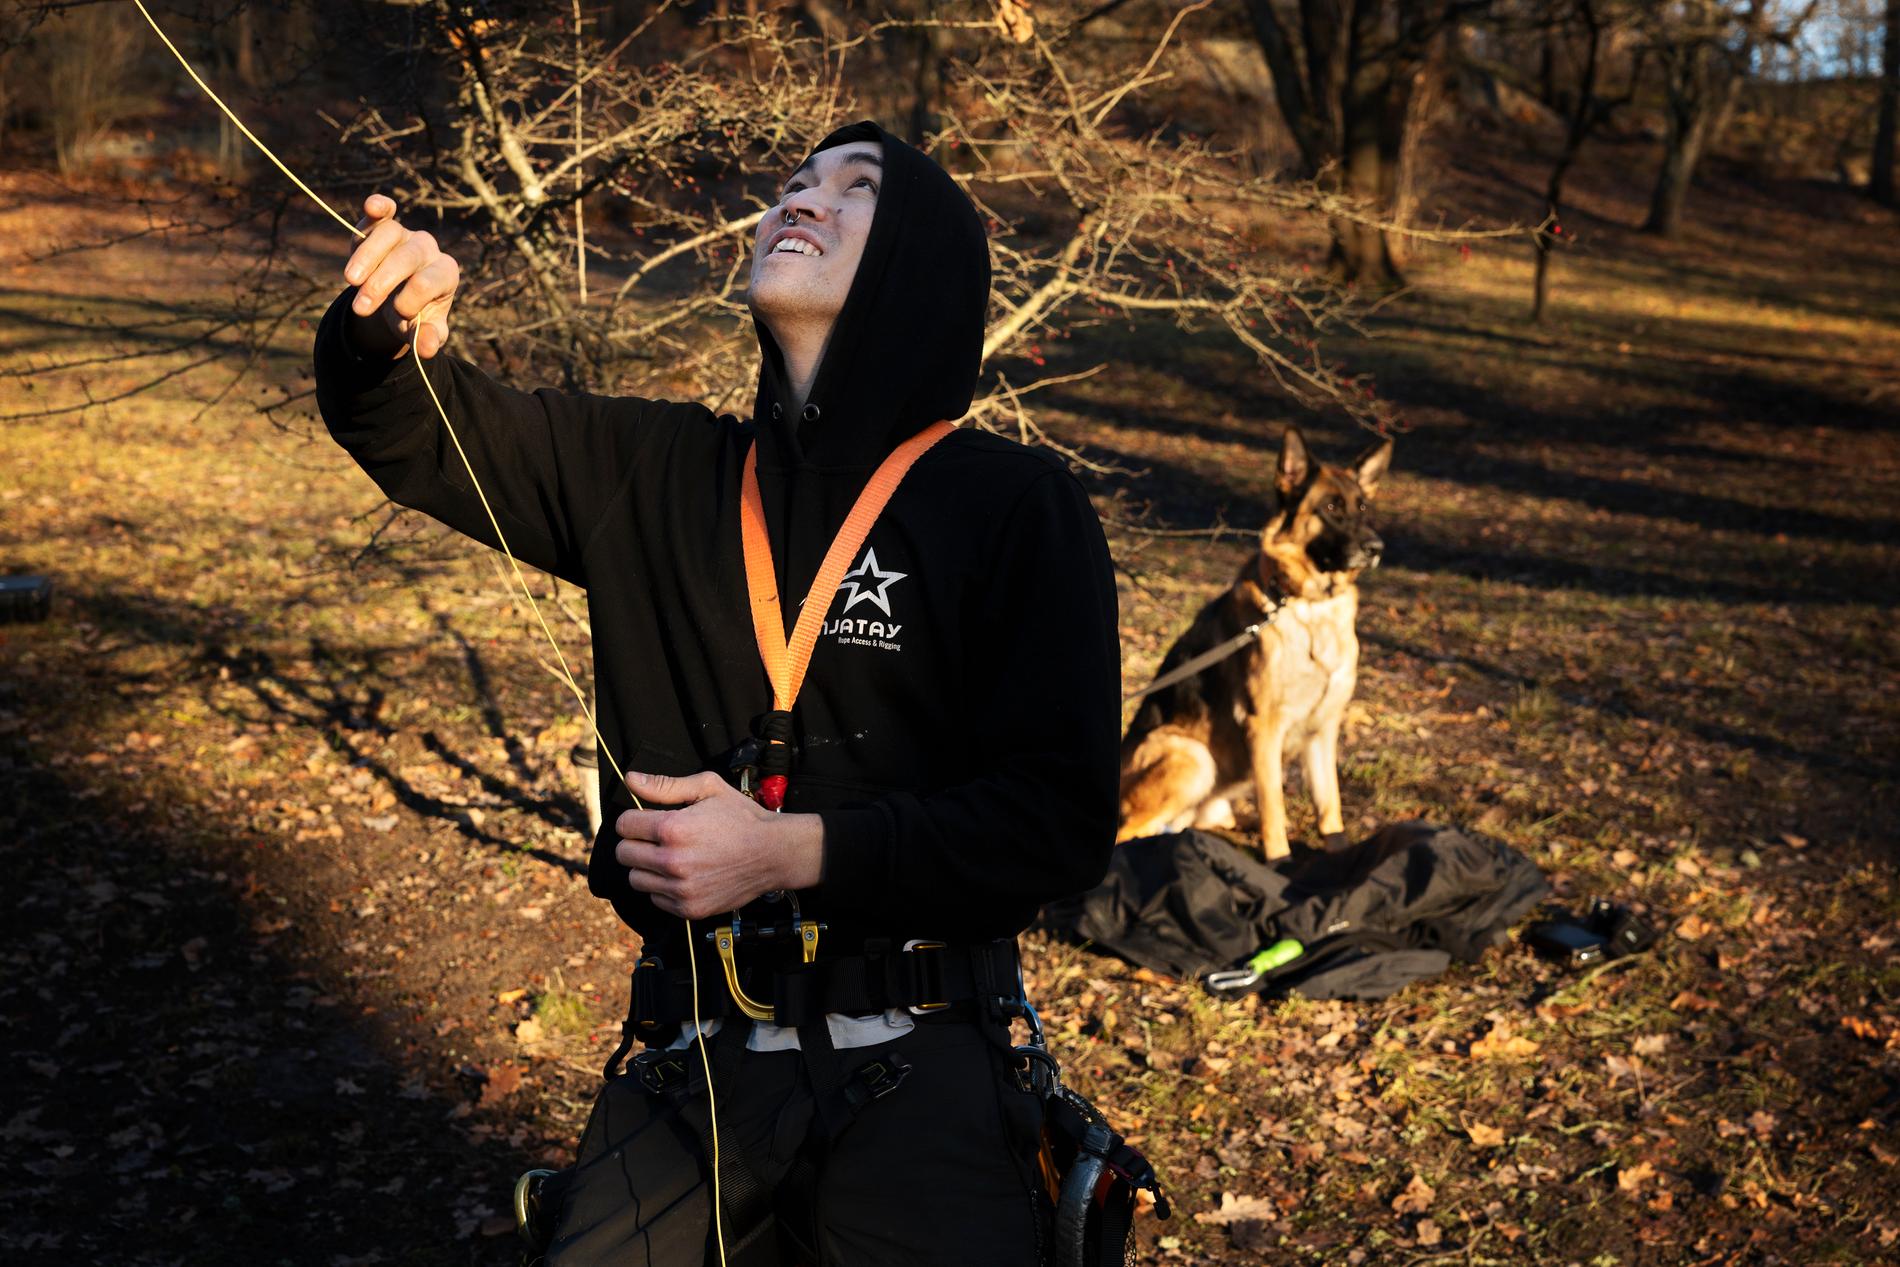 ”Det ligger i människors natur att klättra” säger Ninjatay. Hunden Alice väntar tålmodigt medan husse tar sig an ett träd.